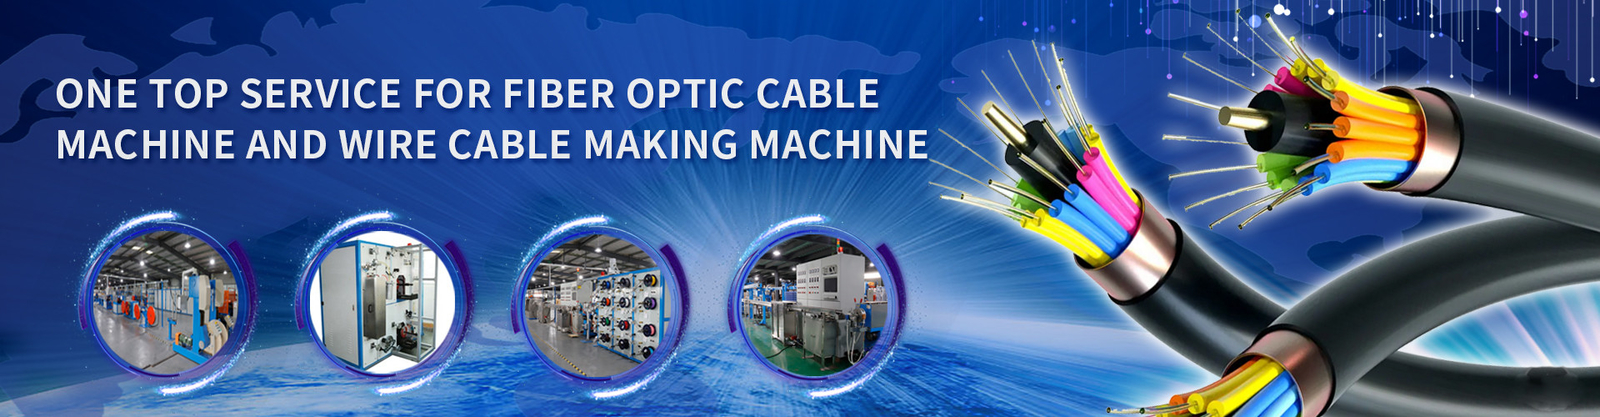 Fiber Optic Cable Machine